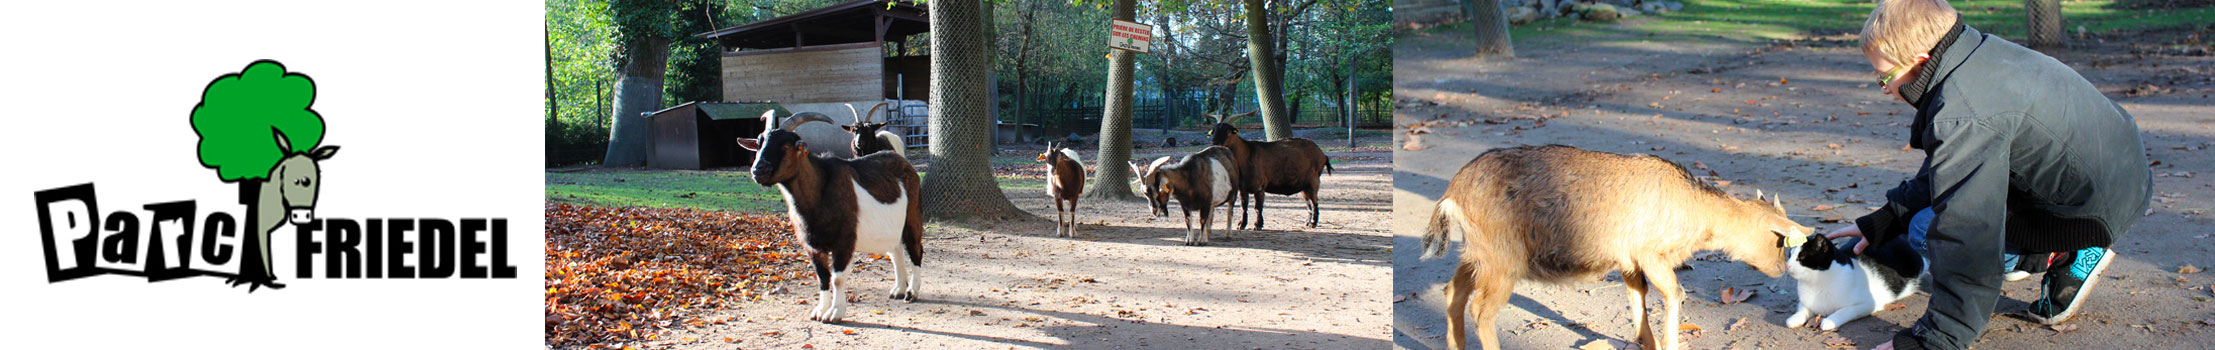 Le Parc animalier Friedel à Illkirch-Graffenstaden